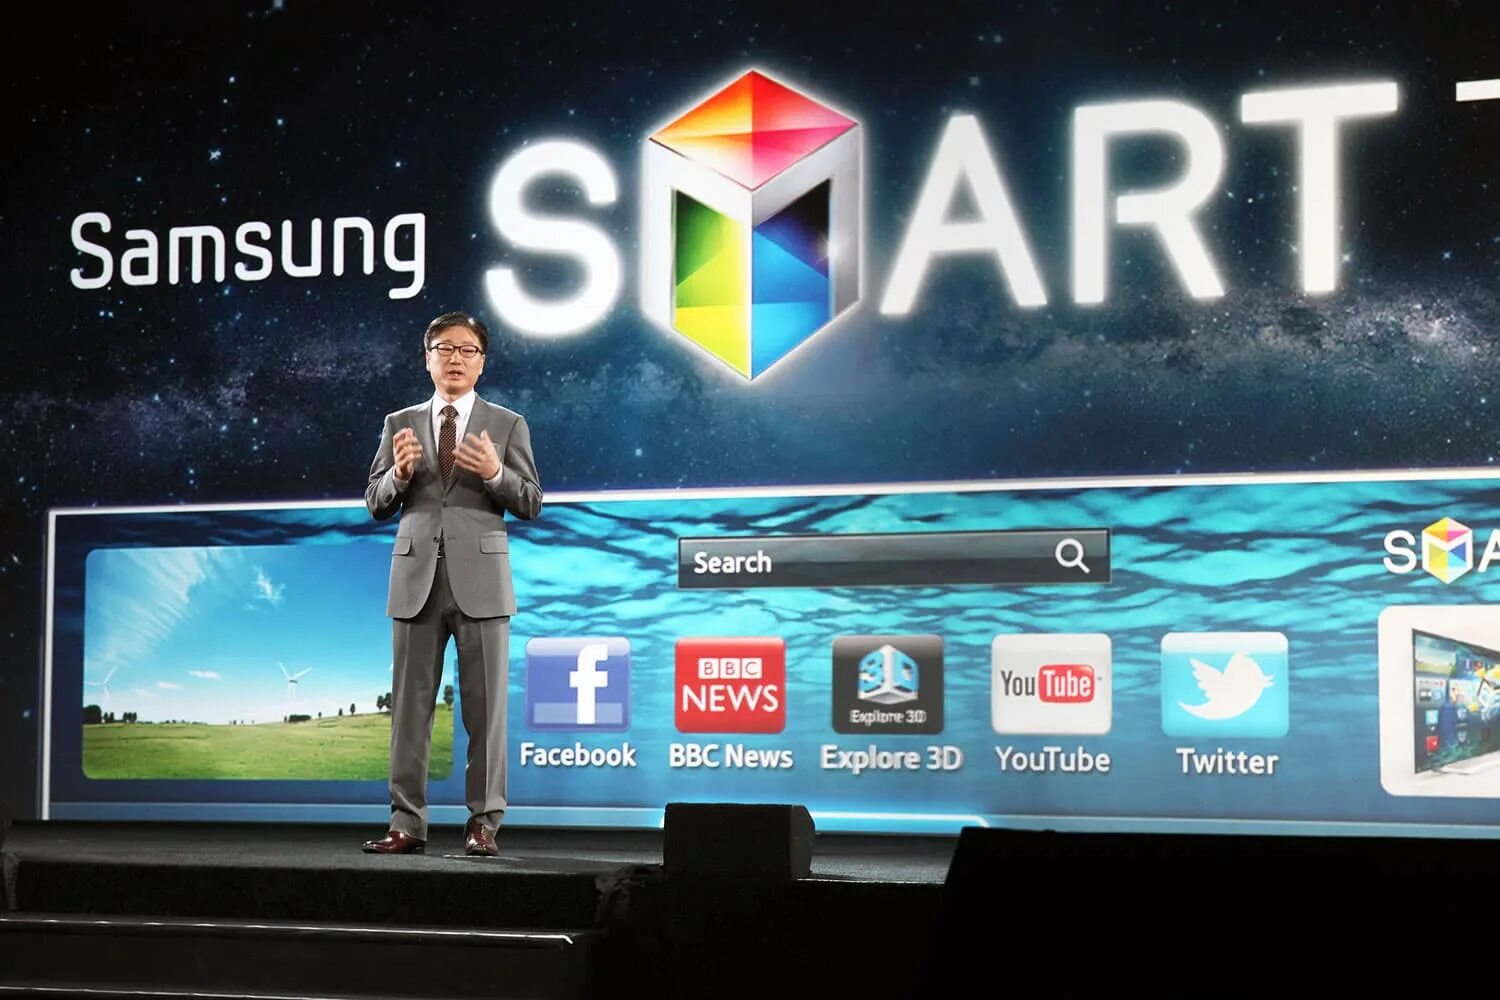 Самсунг смарт новый. Samsung Smart TV 2012. Самсунг смарт ТВ 2012 года. Телевизор Samsung Smart TV 2012 года. Самсунг смарт ТВ выбор интерфейса.